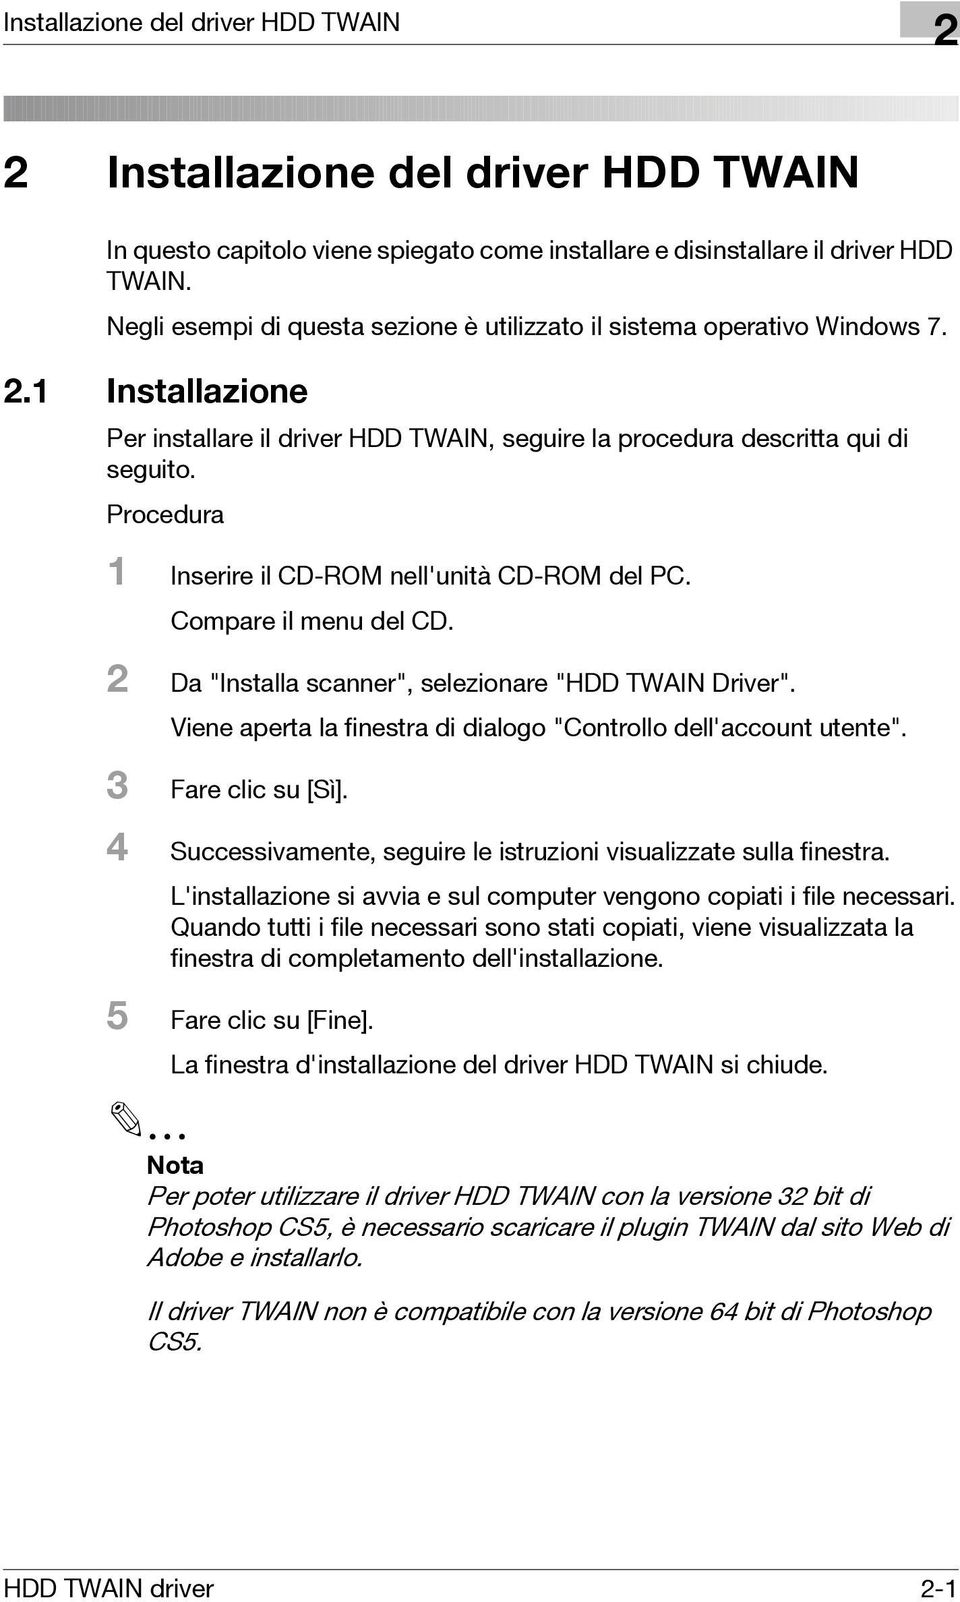 Procedura 1 Inserire il CD-ROM nell'unità CD-ROM del PC. Compare il menu del CD. 2 Da "Installa scanner", selezionare "HDD TWAIN Driver".